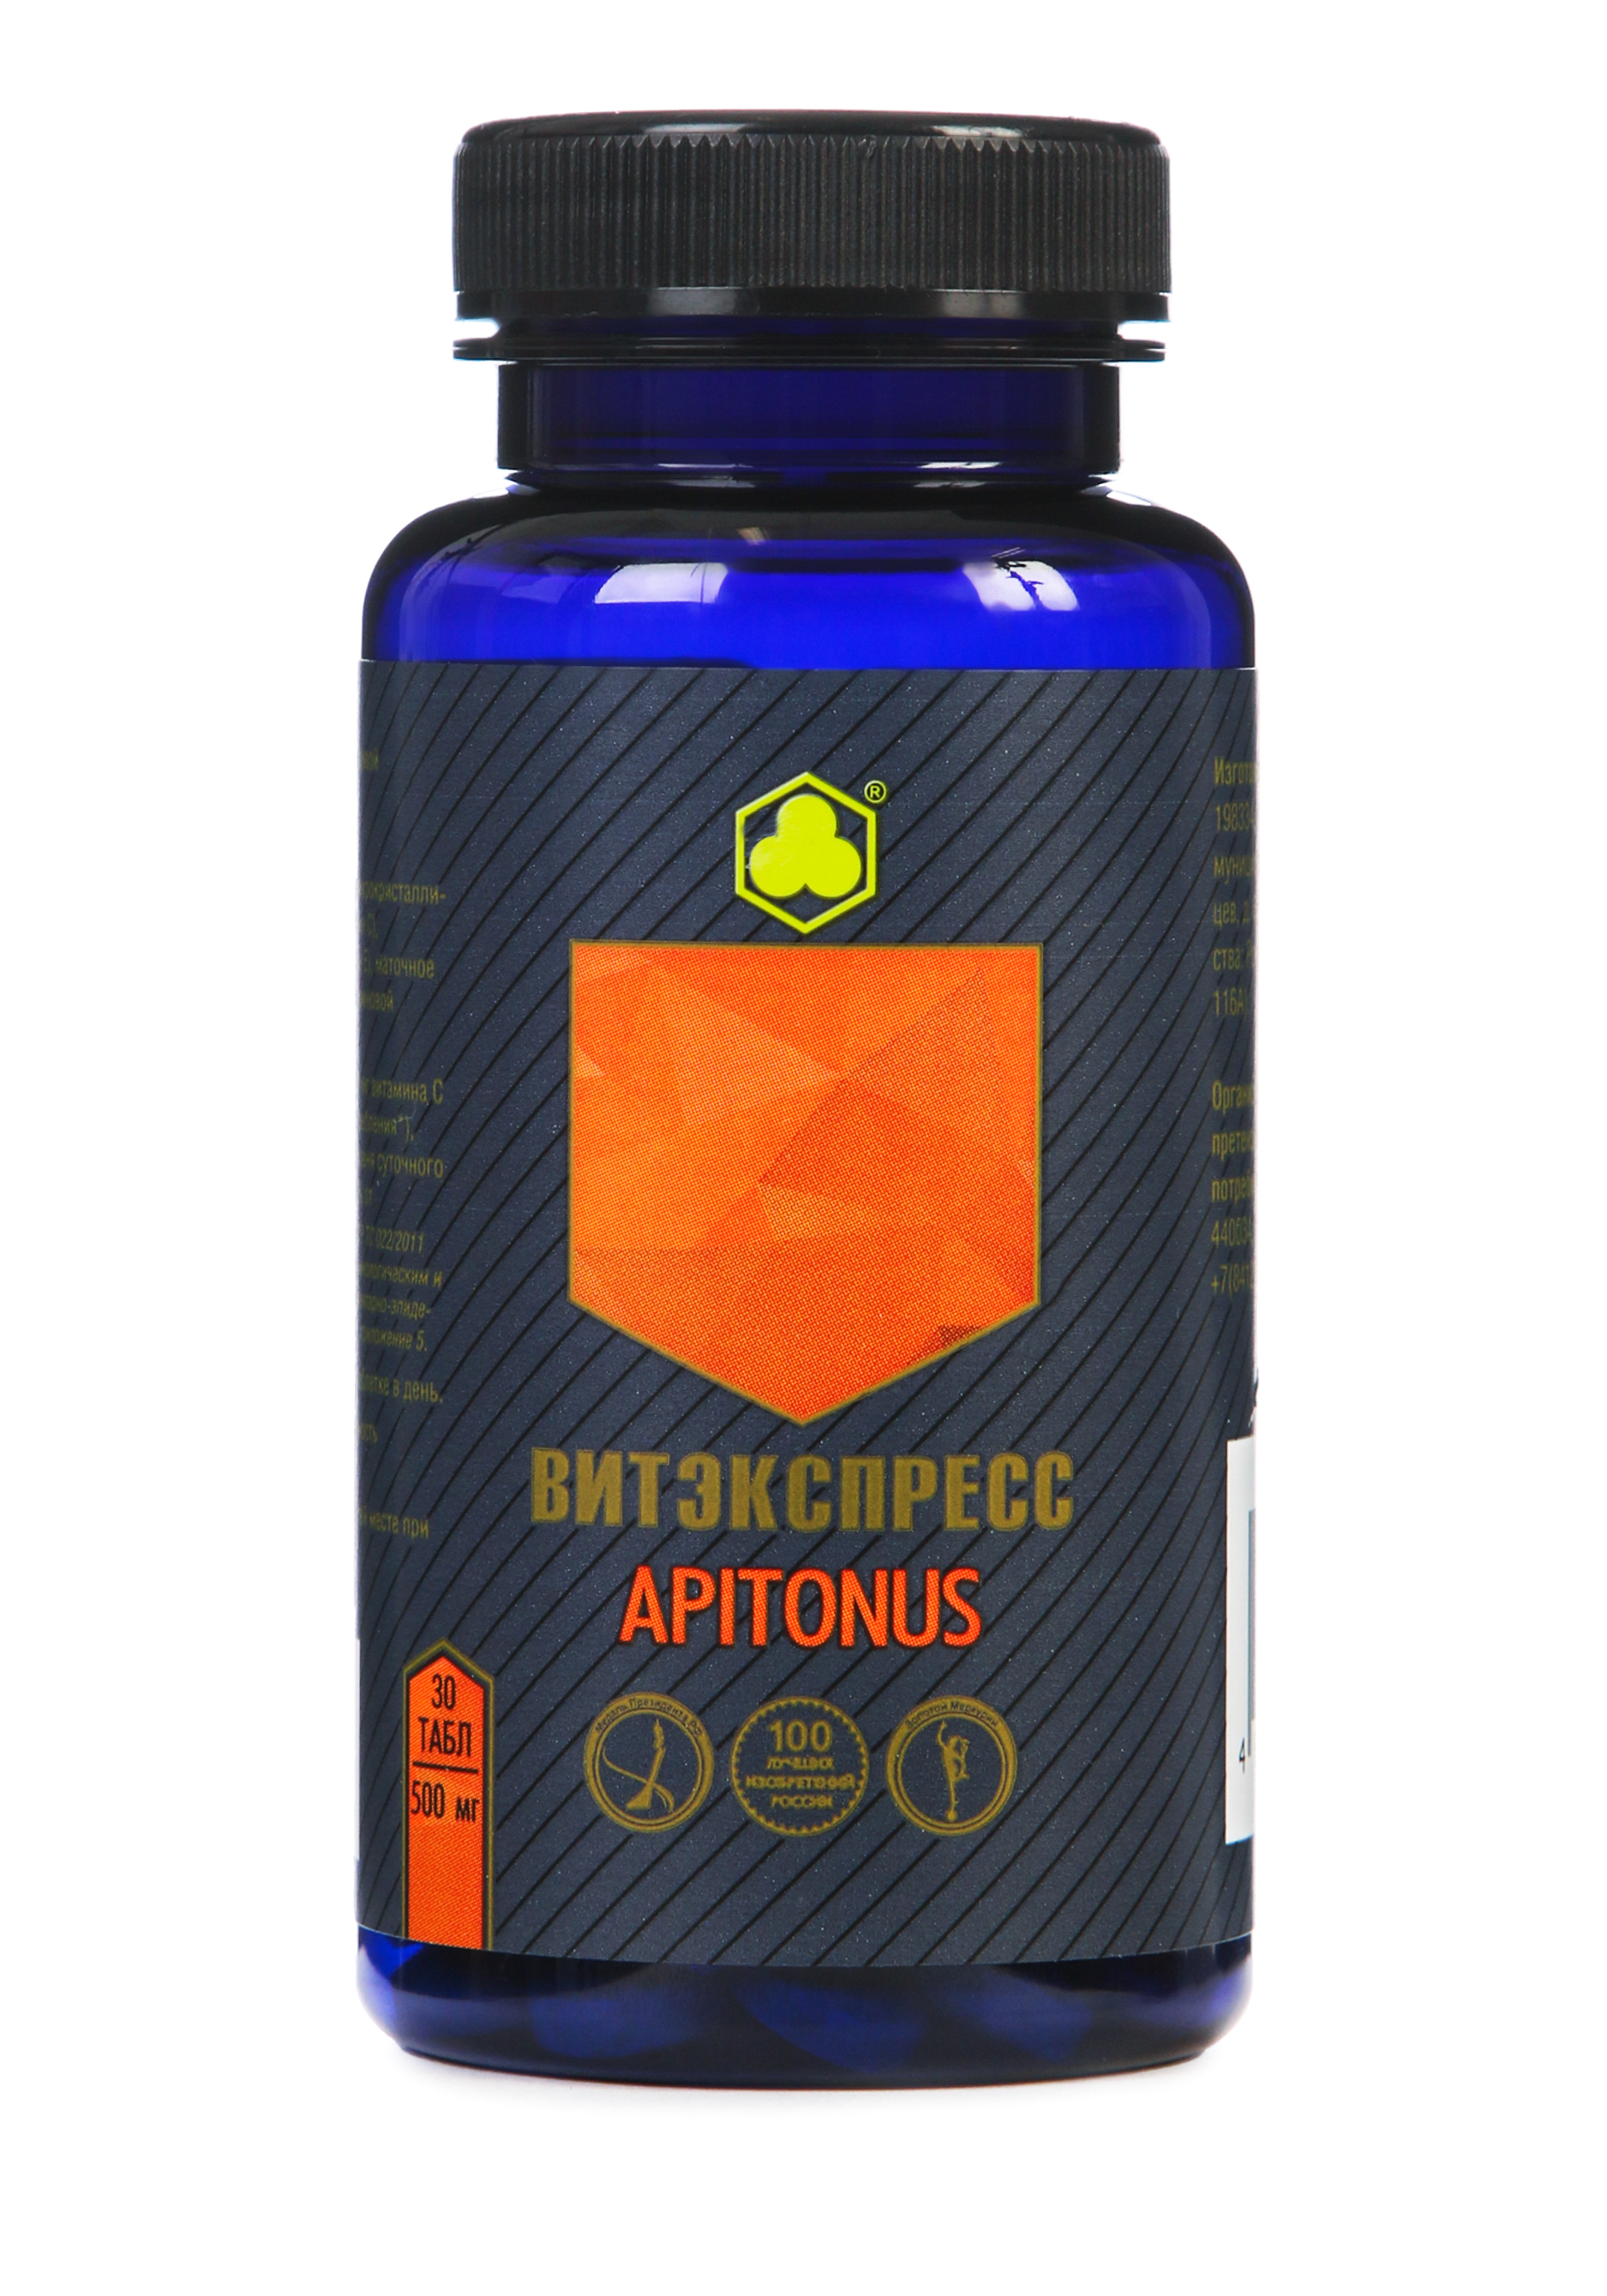 Органик-комплекс Apitonus aquayer удо ермолаева таблетки 90шт